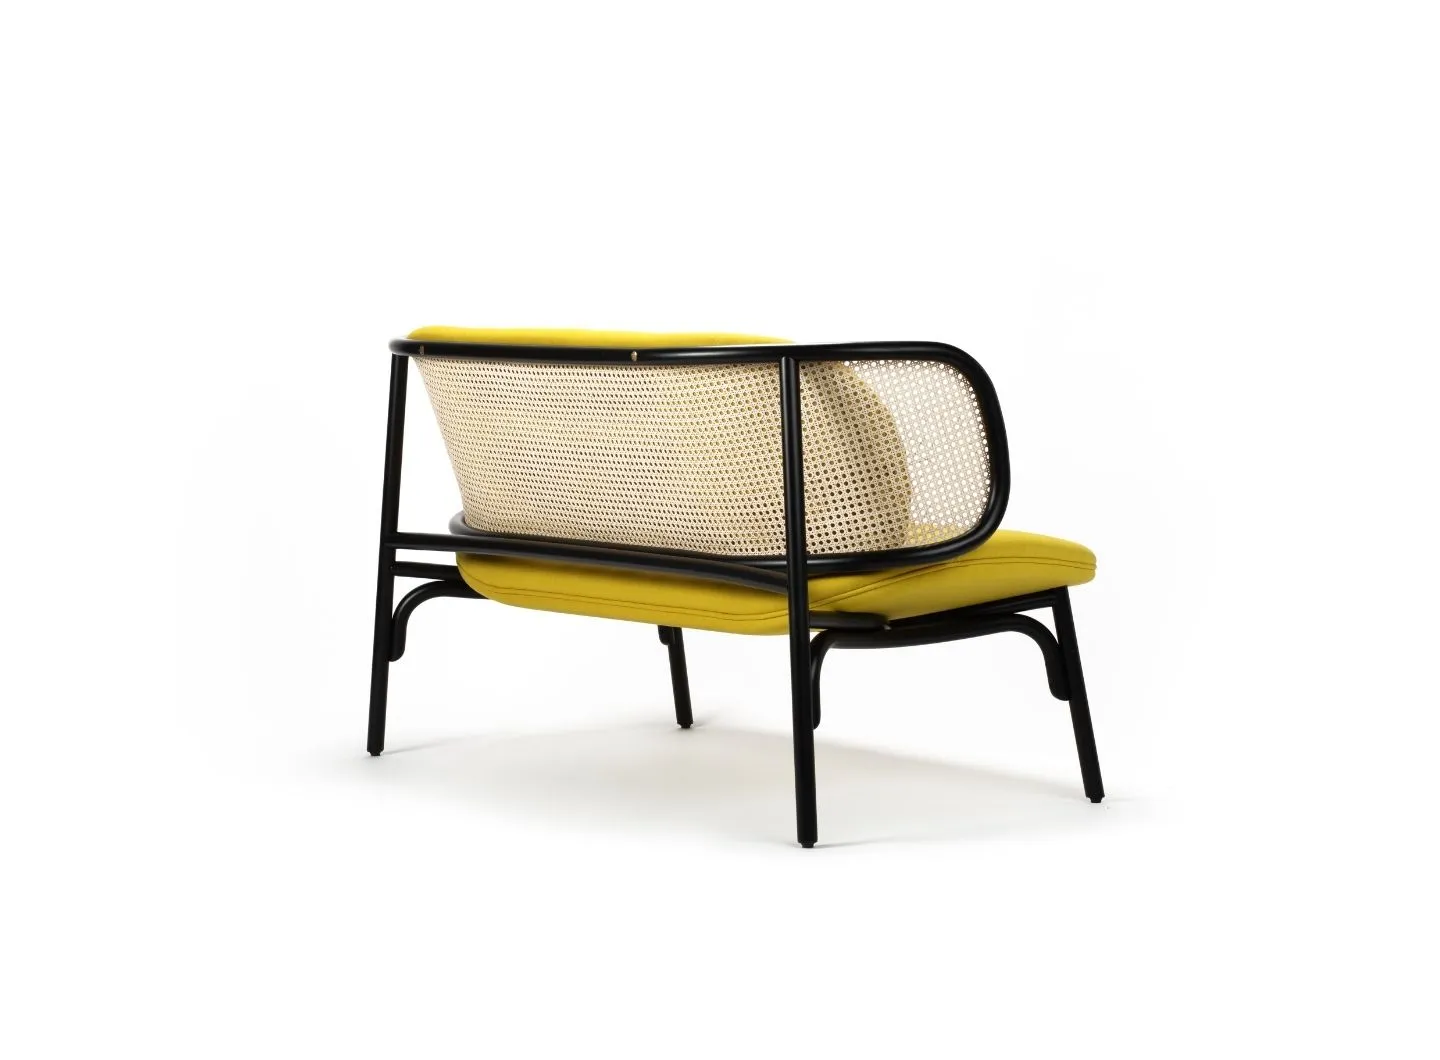 Suzenne sofa design by Chiara Andreatti